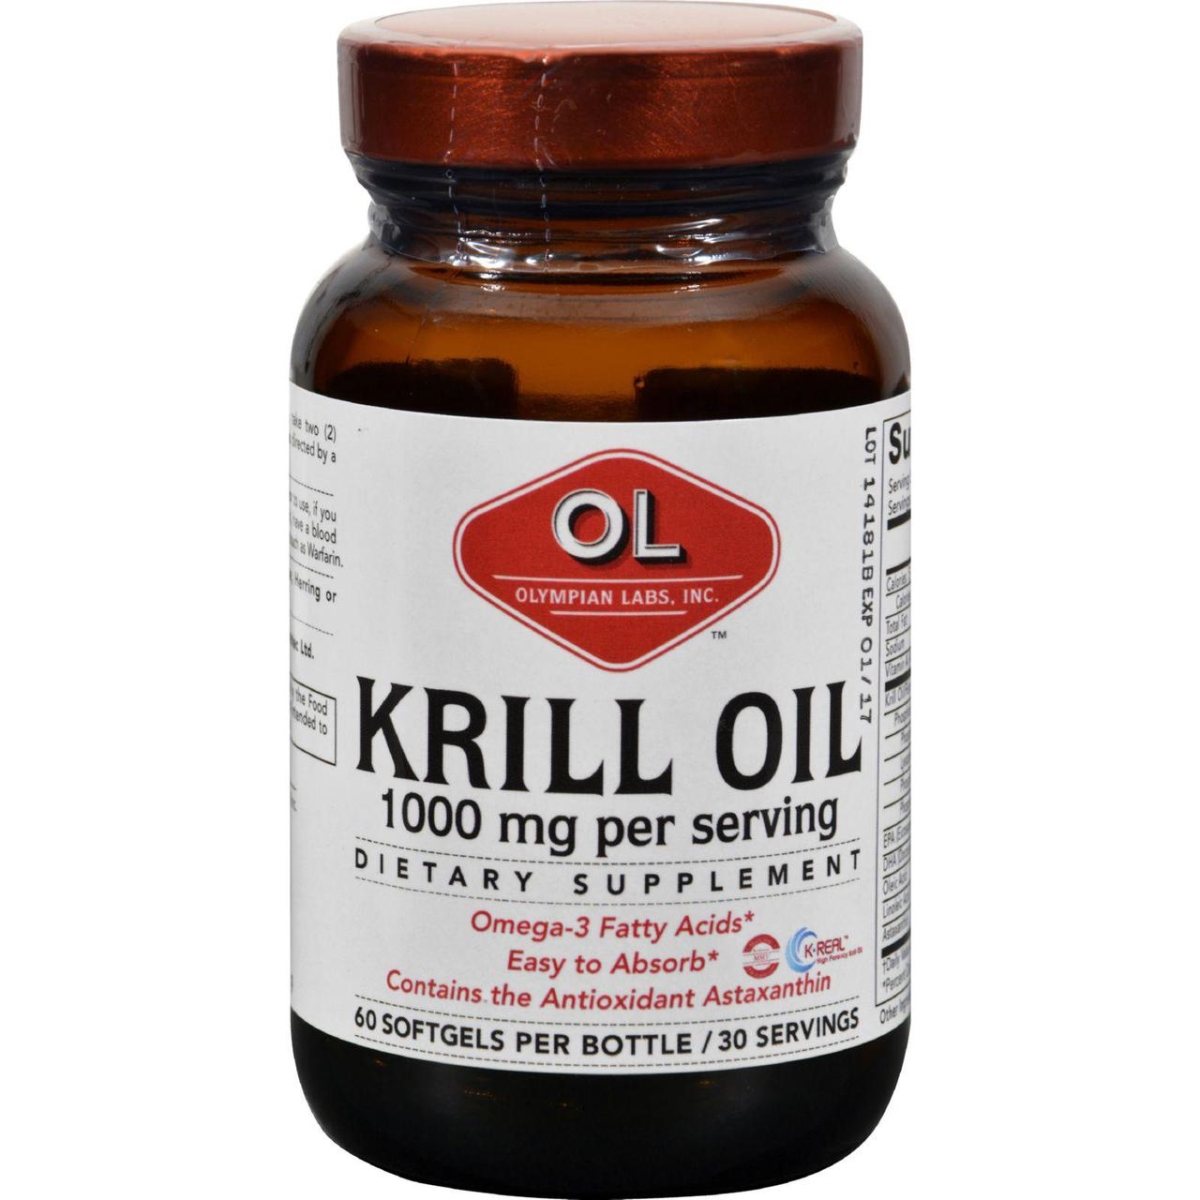 Hg0382713 1000 Mg Krill Oil - 60 Softgels